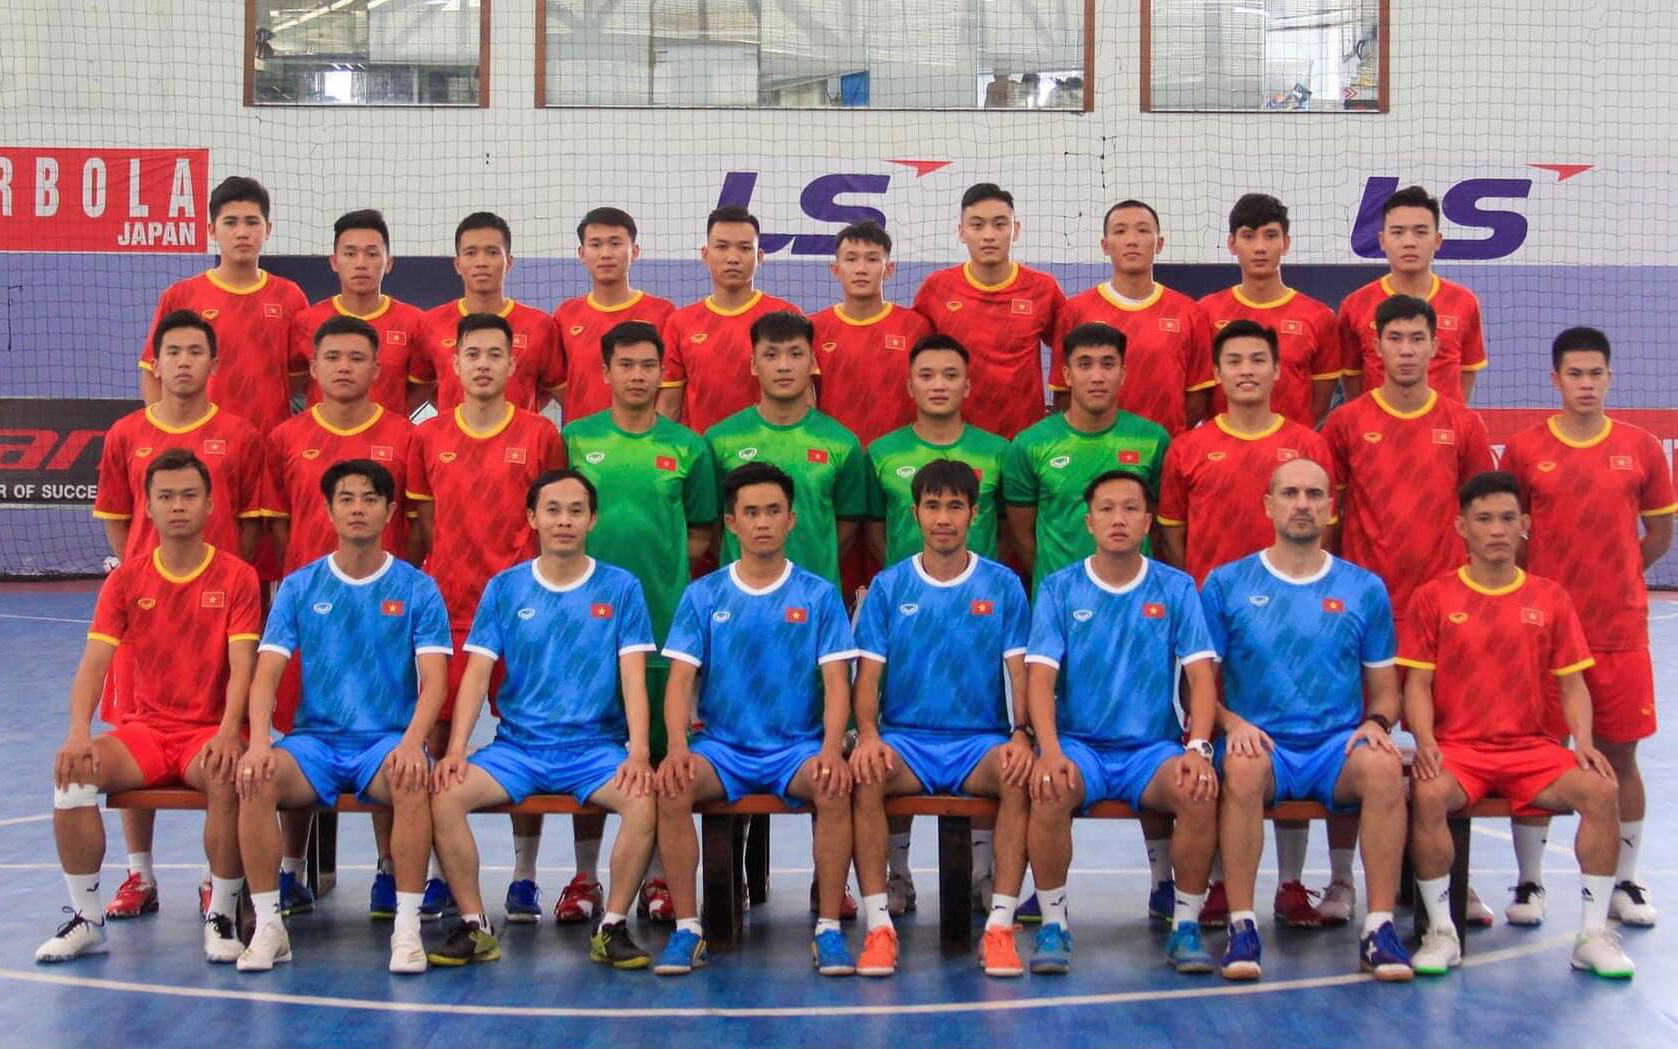 Chốt danh sách đội tuyển futsal Việt Nam sang UAE dự trận play-off giành vé đi World Cup